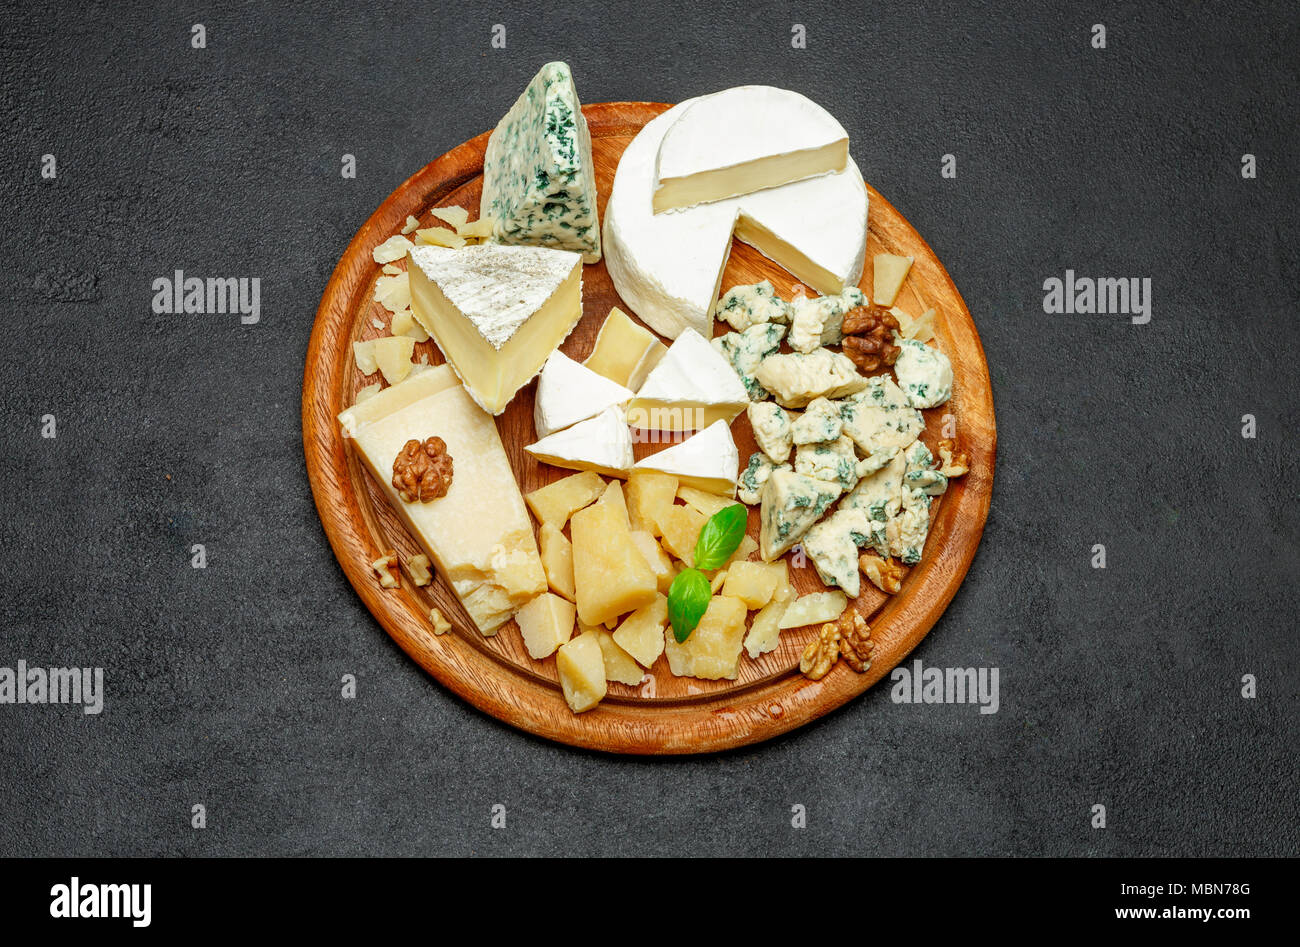 Assiette de fromage avec un assortiment de fromages camembert, Brie, parmesan, chèvre au fromage bleu Banque D'Images